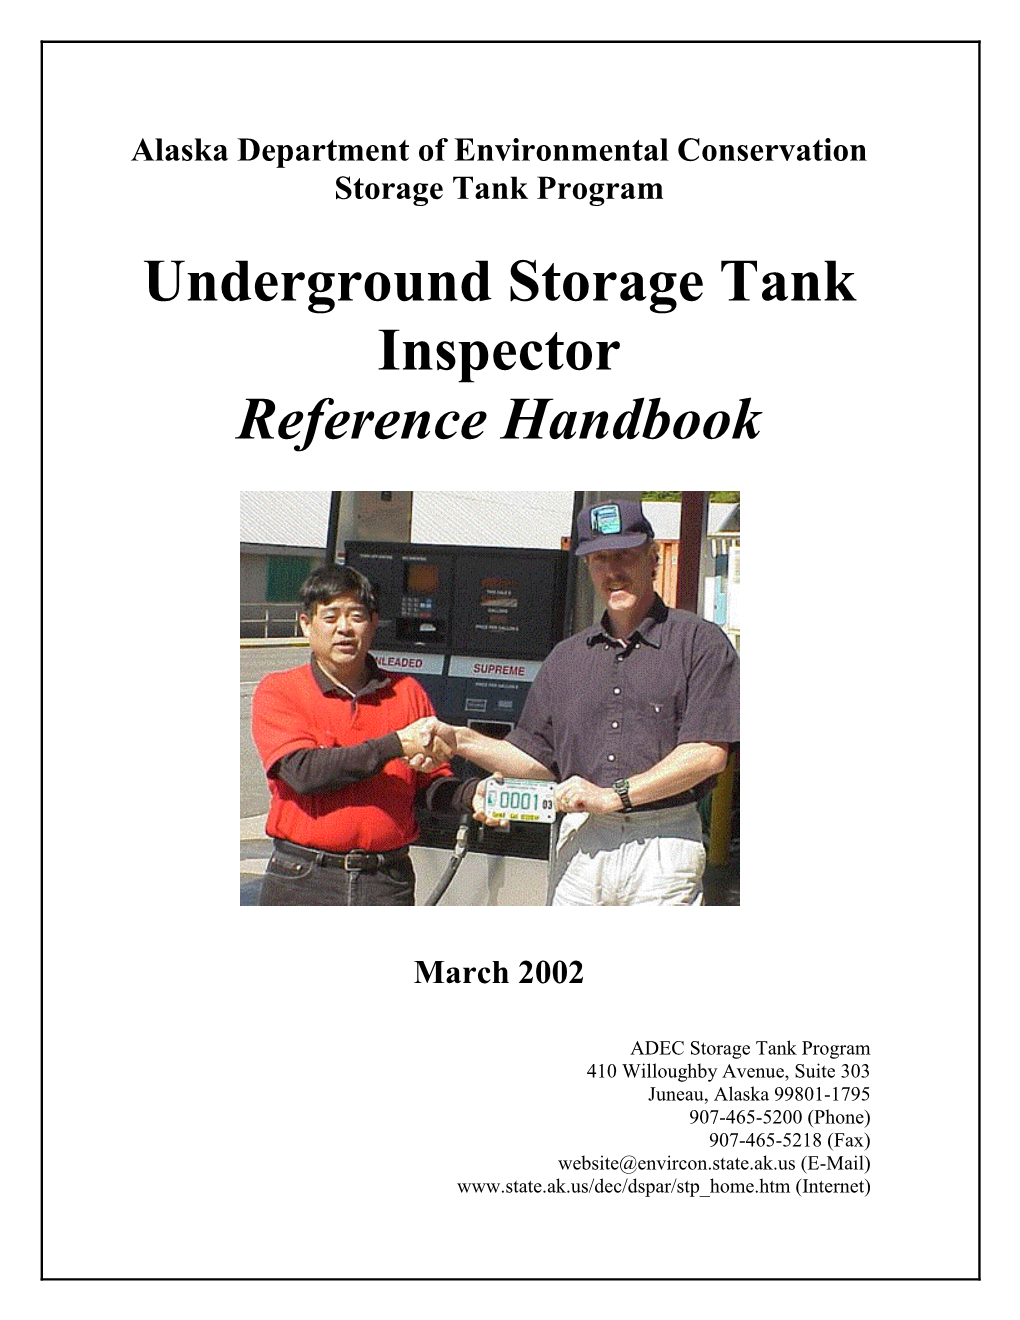 Underground Storage Tank Inspector Handbook Part 1